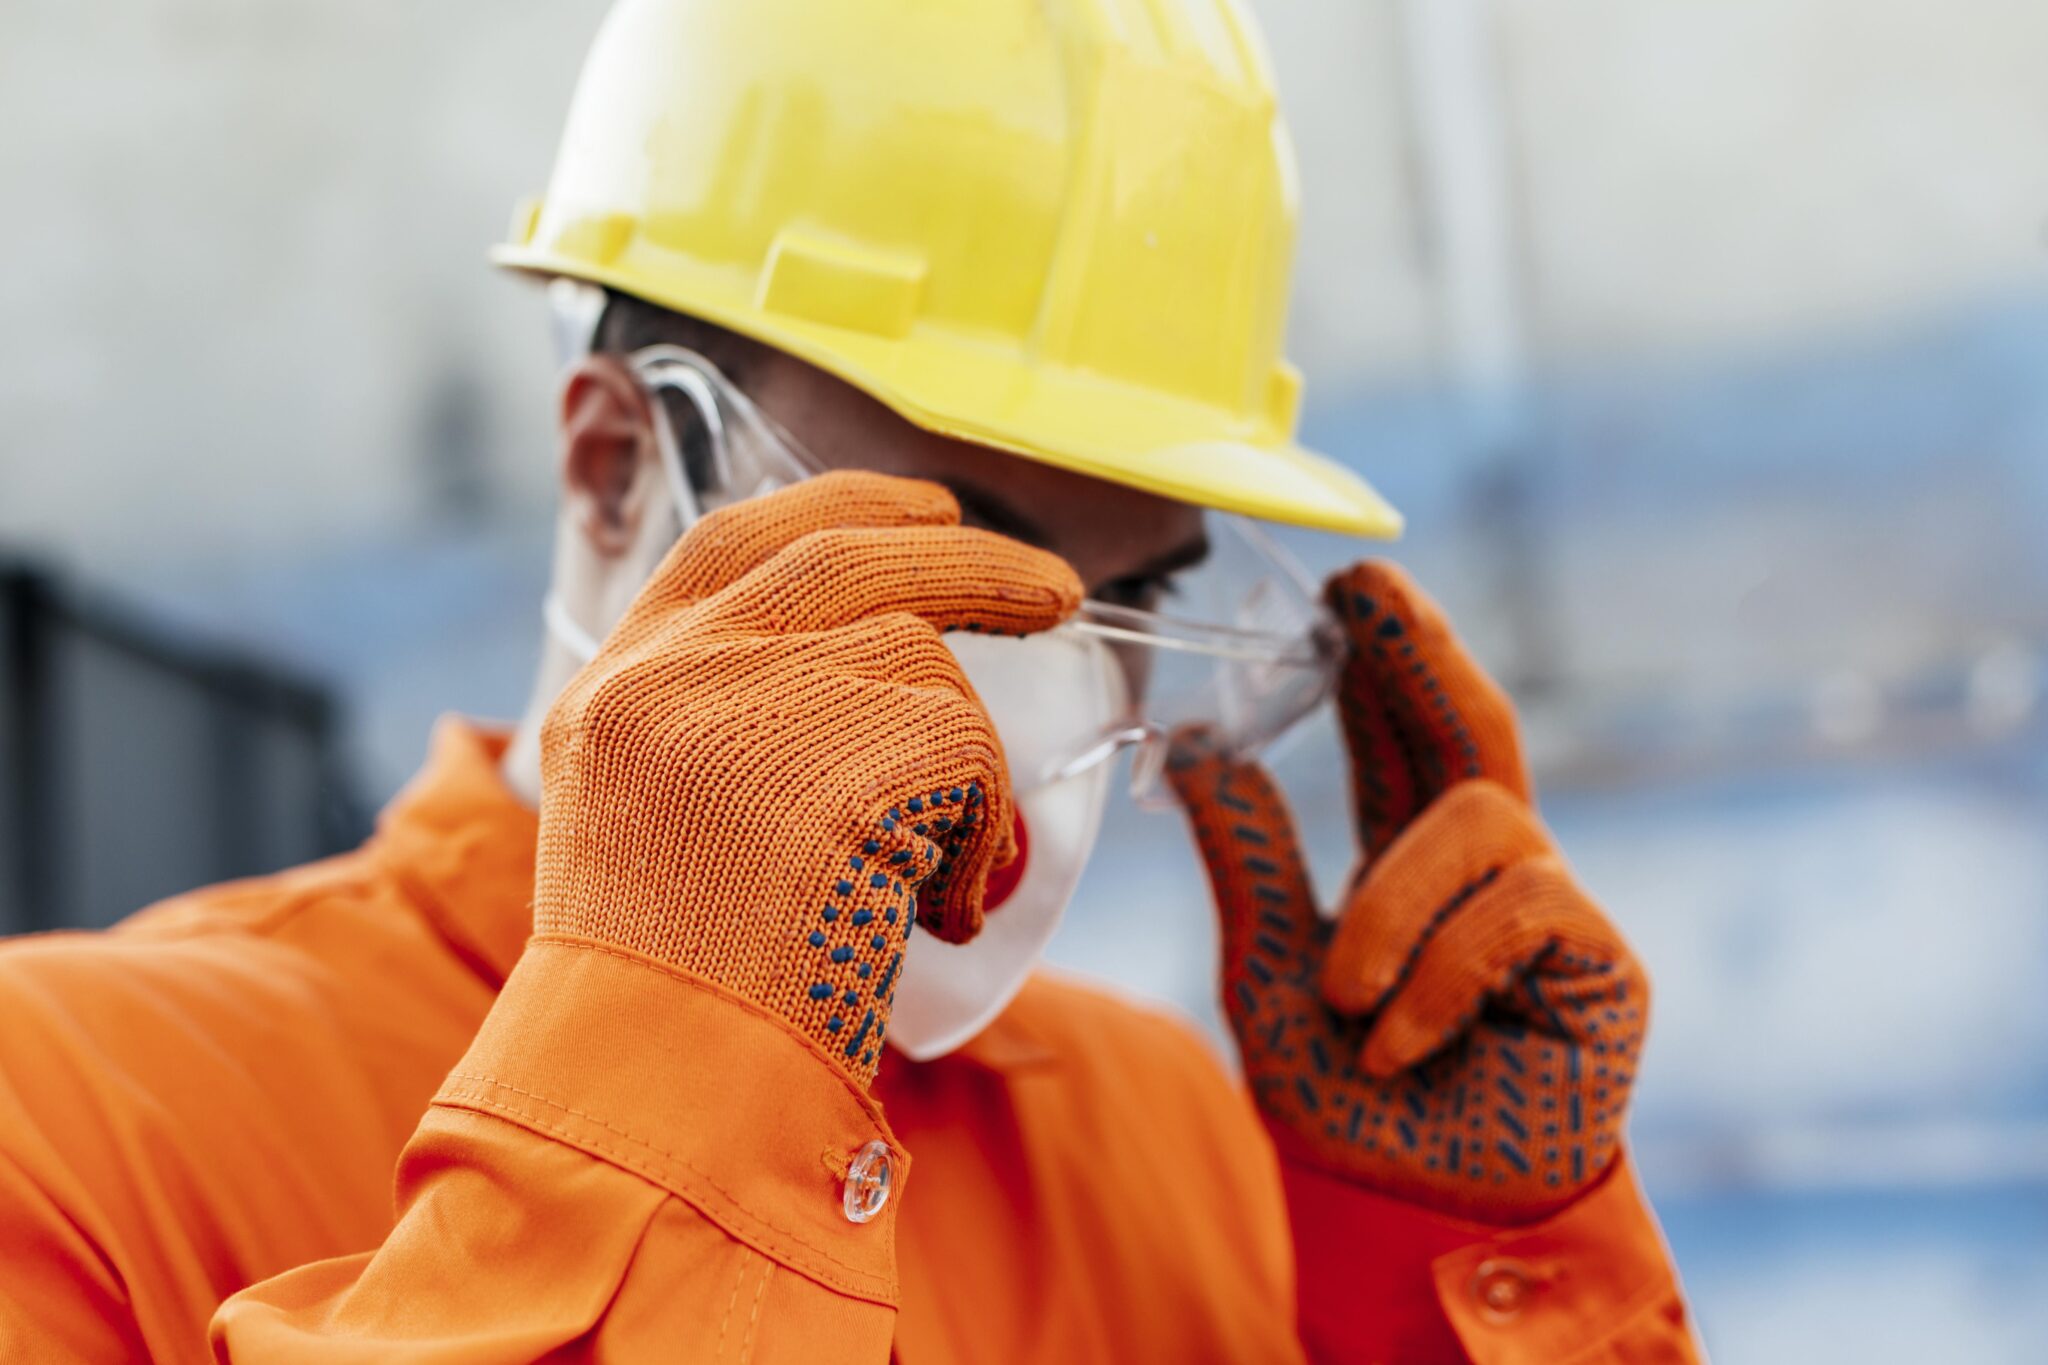 image pour la catégorie spécialiste EPI , illustrant une personnes équipé de vêtements de protection individuel tels que un casque de chantier, des lunettes, gants et tenue de protection.